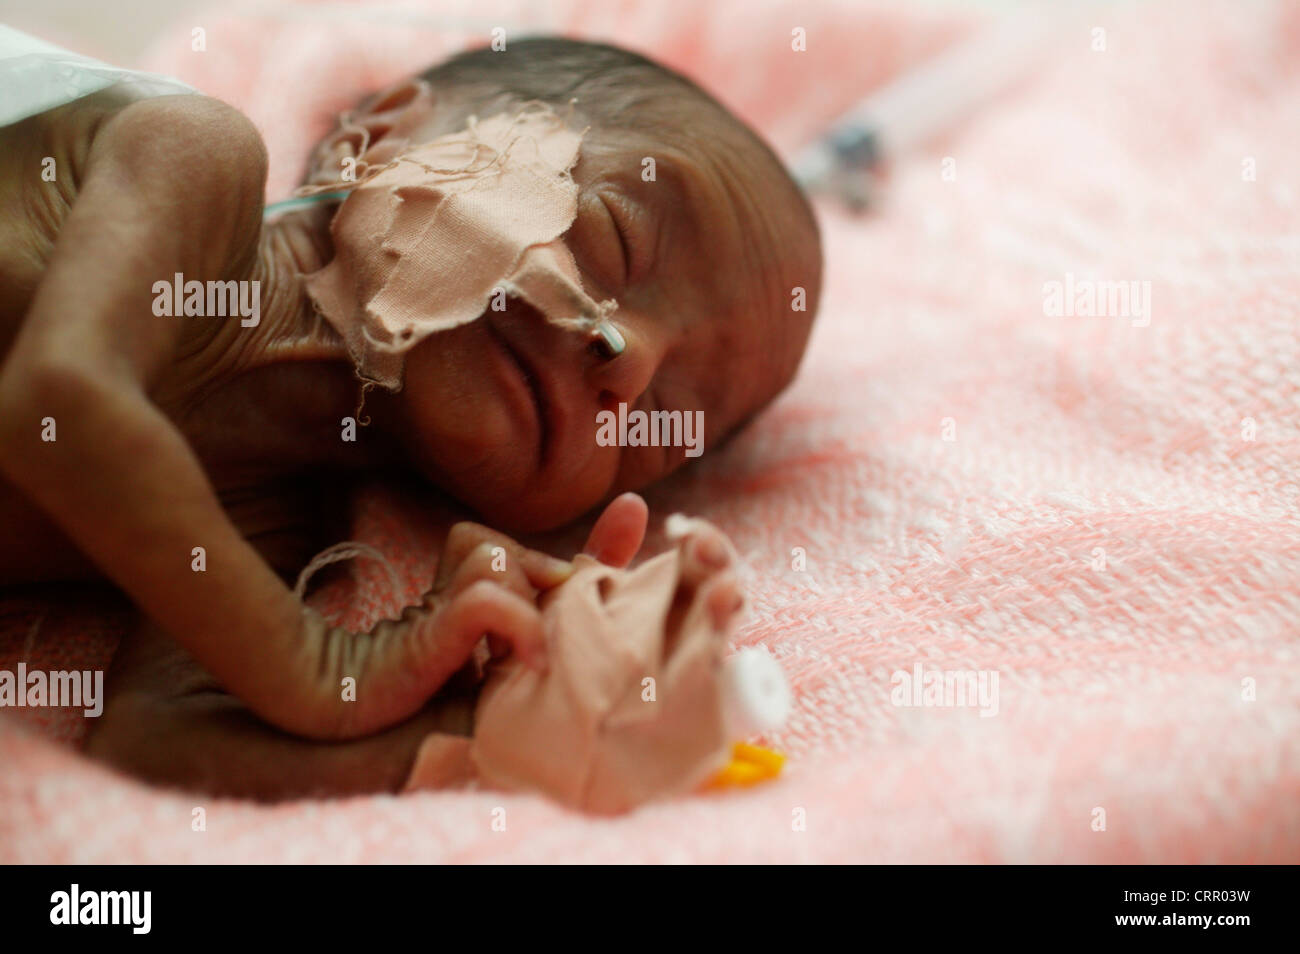 5 días de nacido el bebé prematuro a las 31 semanas pesa 1Kg, con síndrome de dificultad respiratoria y la ictericia. Foto de stock